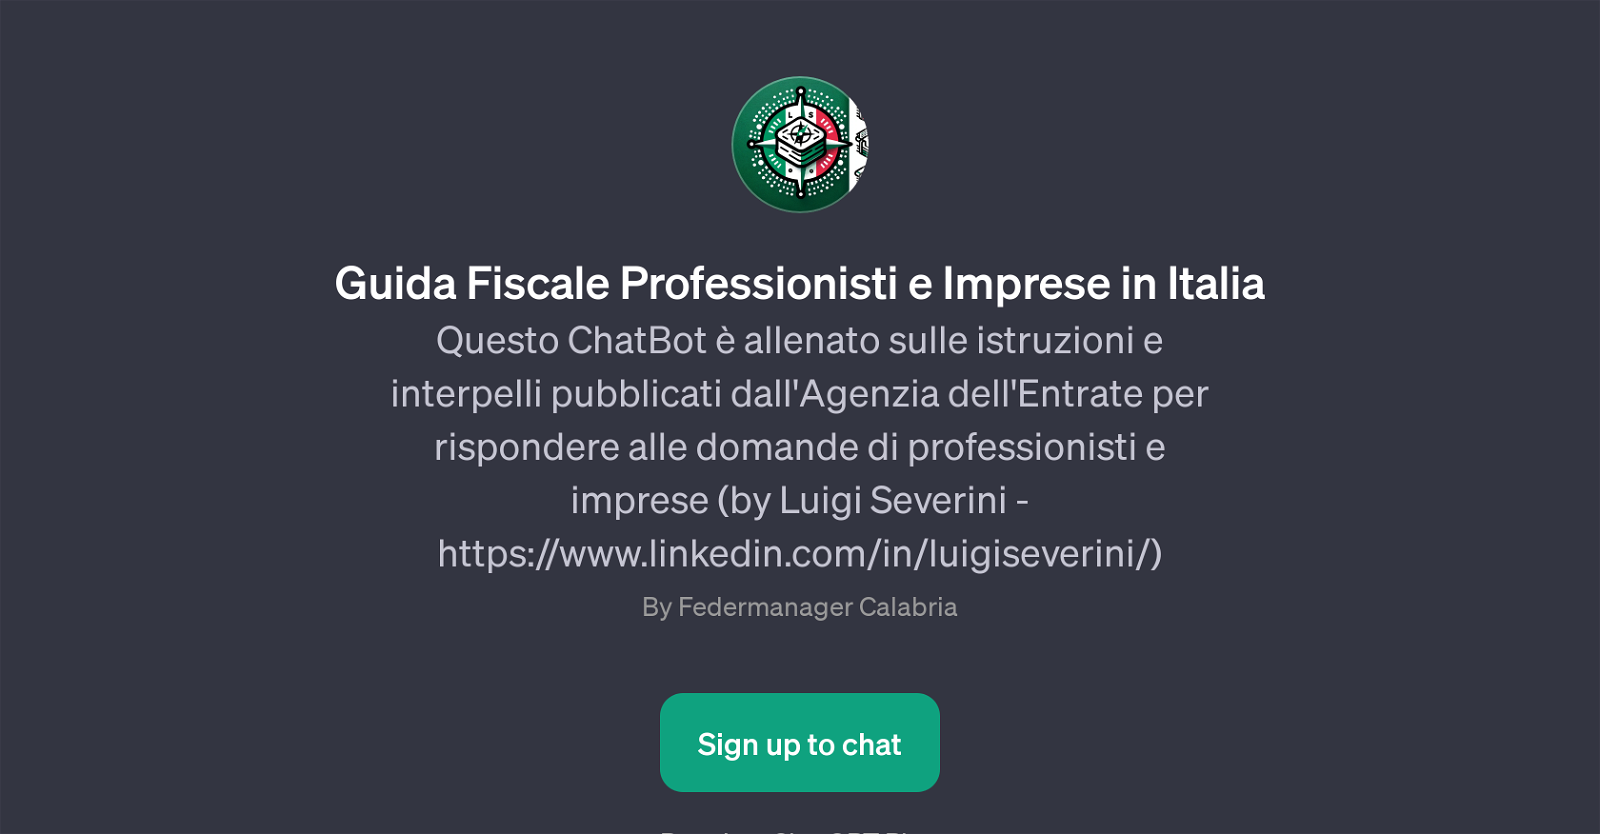 Guida Fiscale Professionisti e Imprese in Italia website